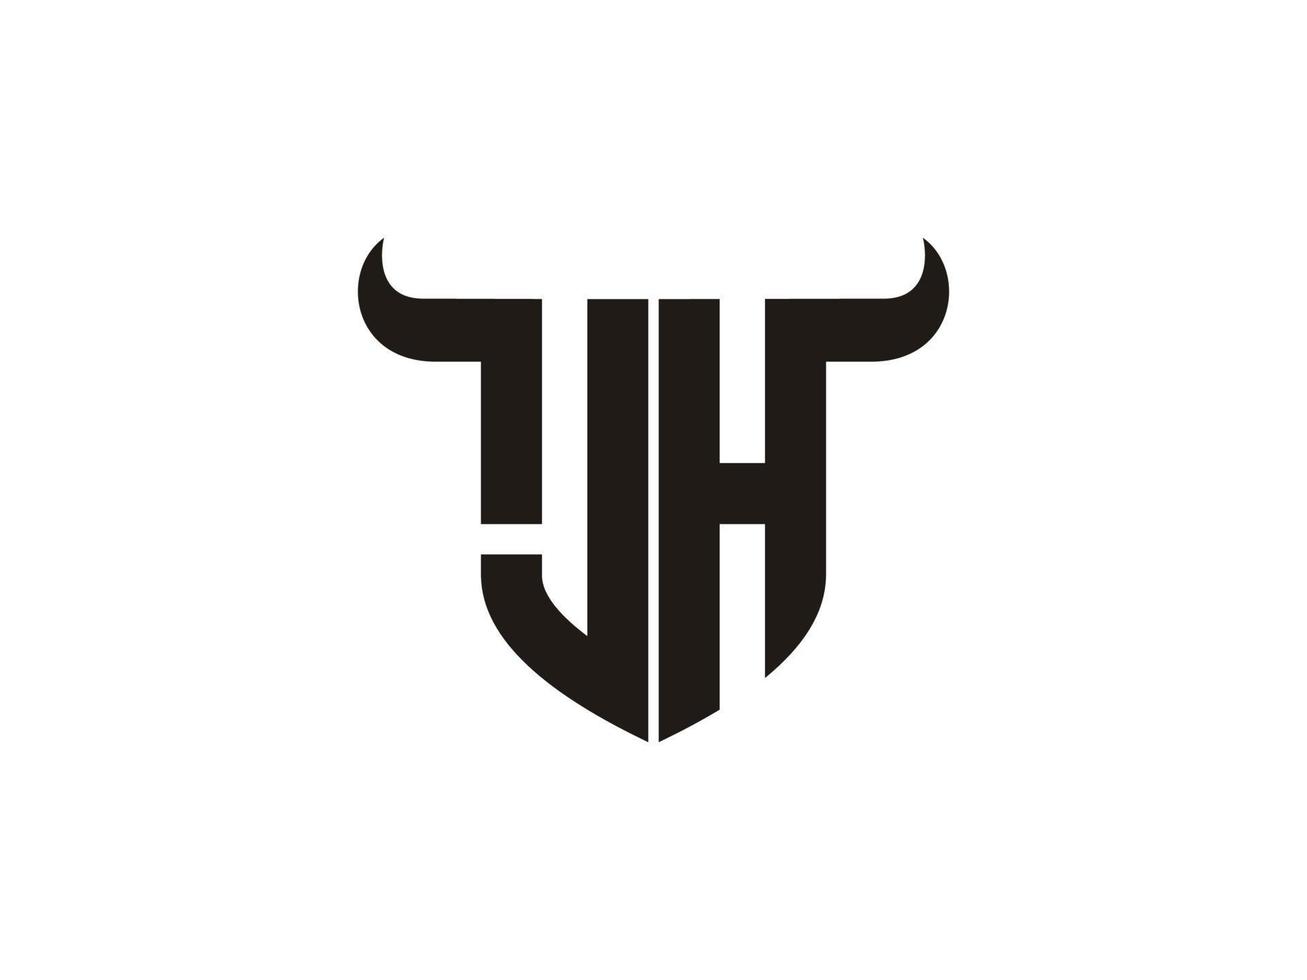 création initiale du logo jh bull. vecteur